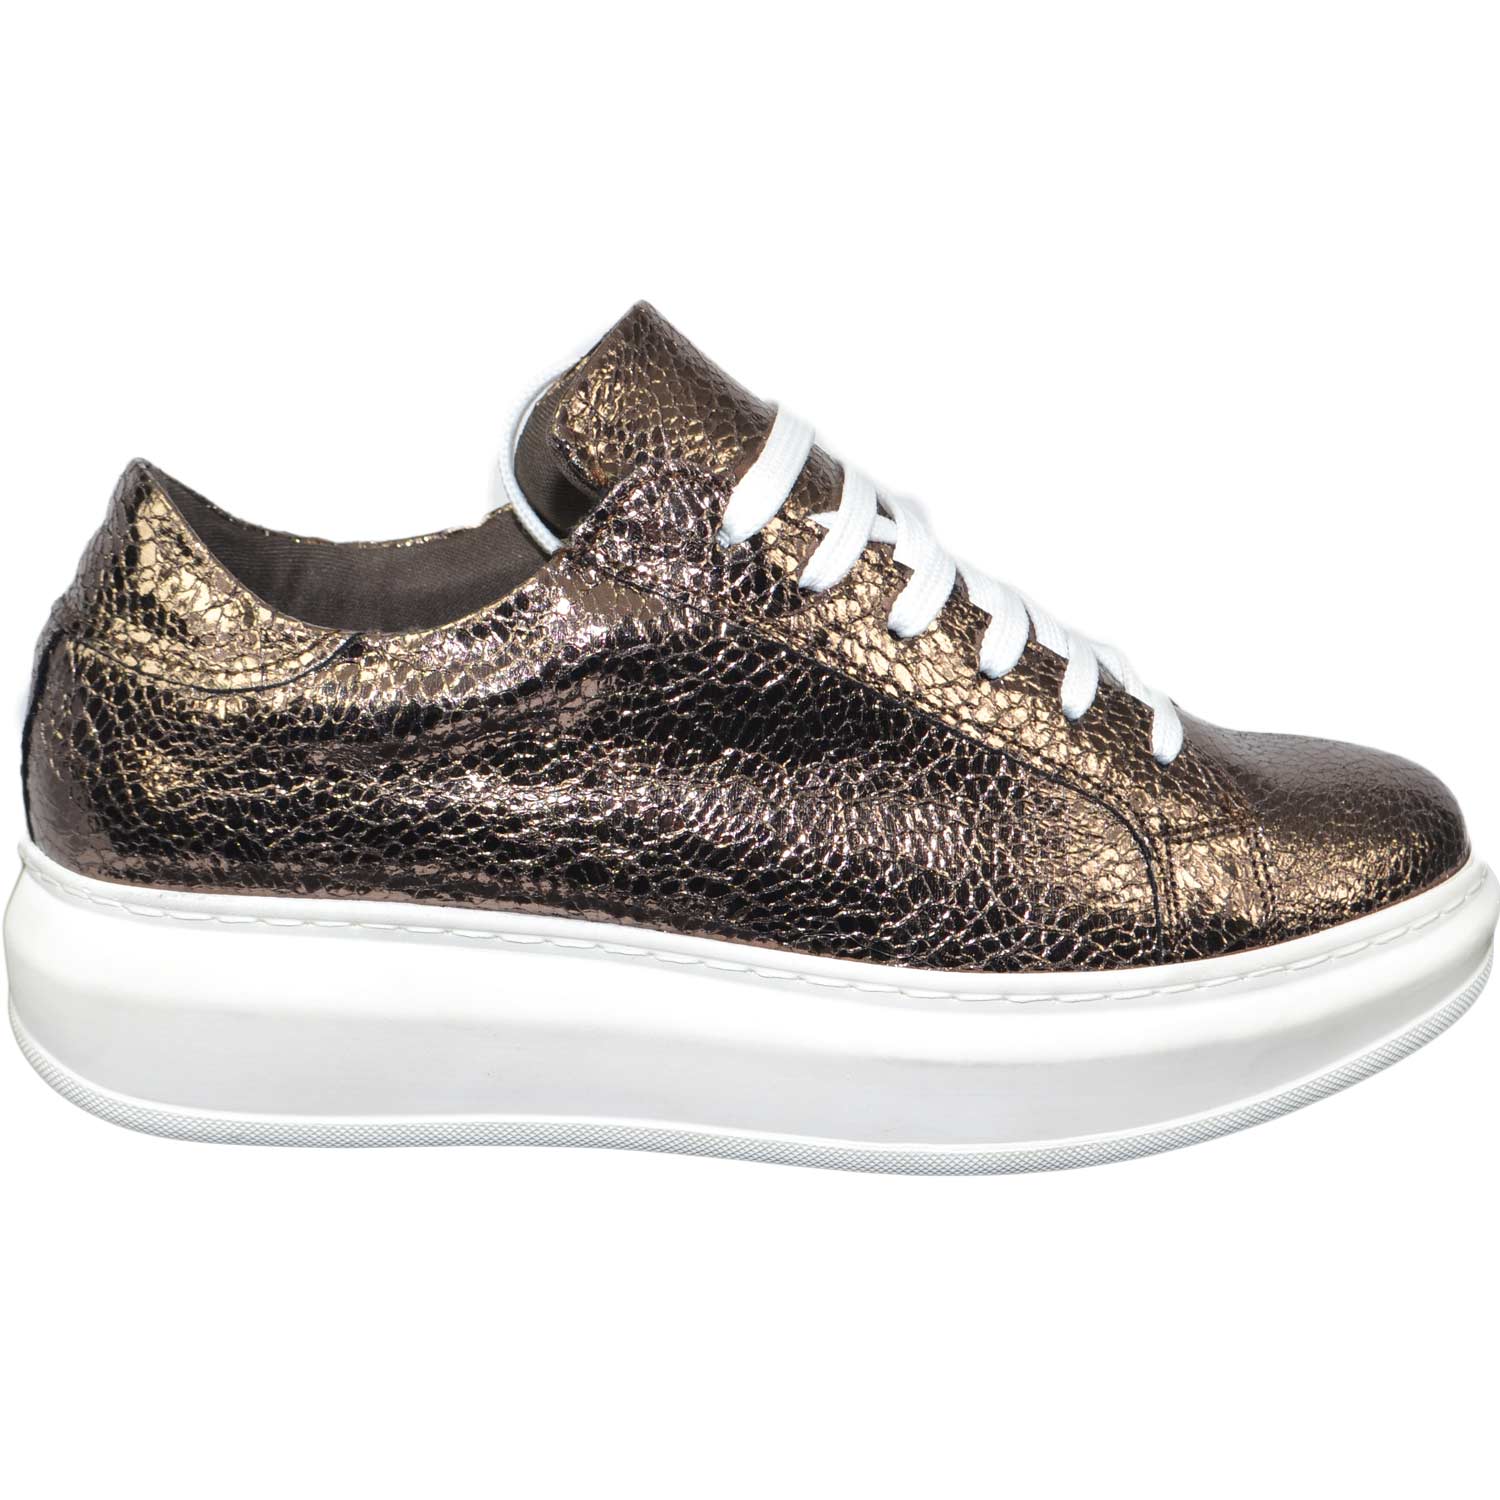 sneakers scarpe donna sportivo ginnico vera pelle made in italy bronzo bottolato moda glamour.